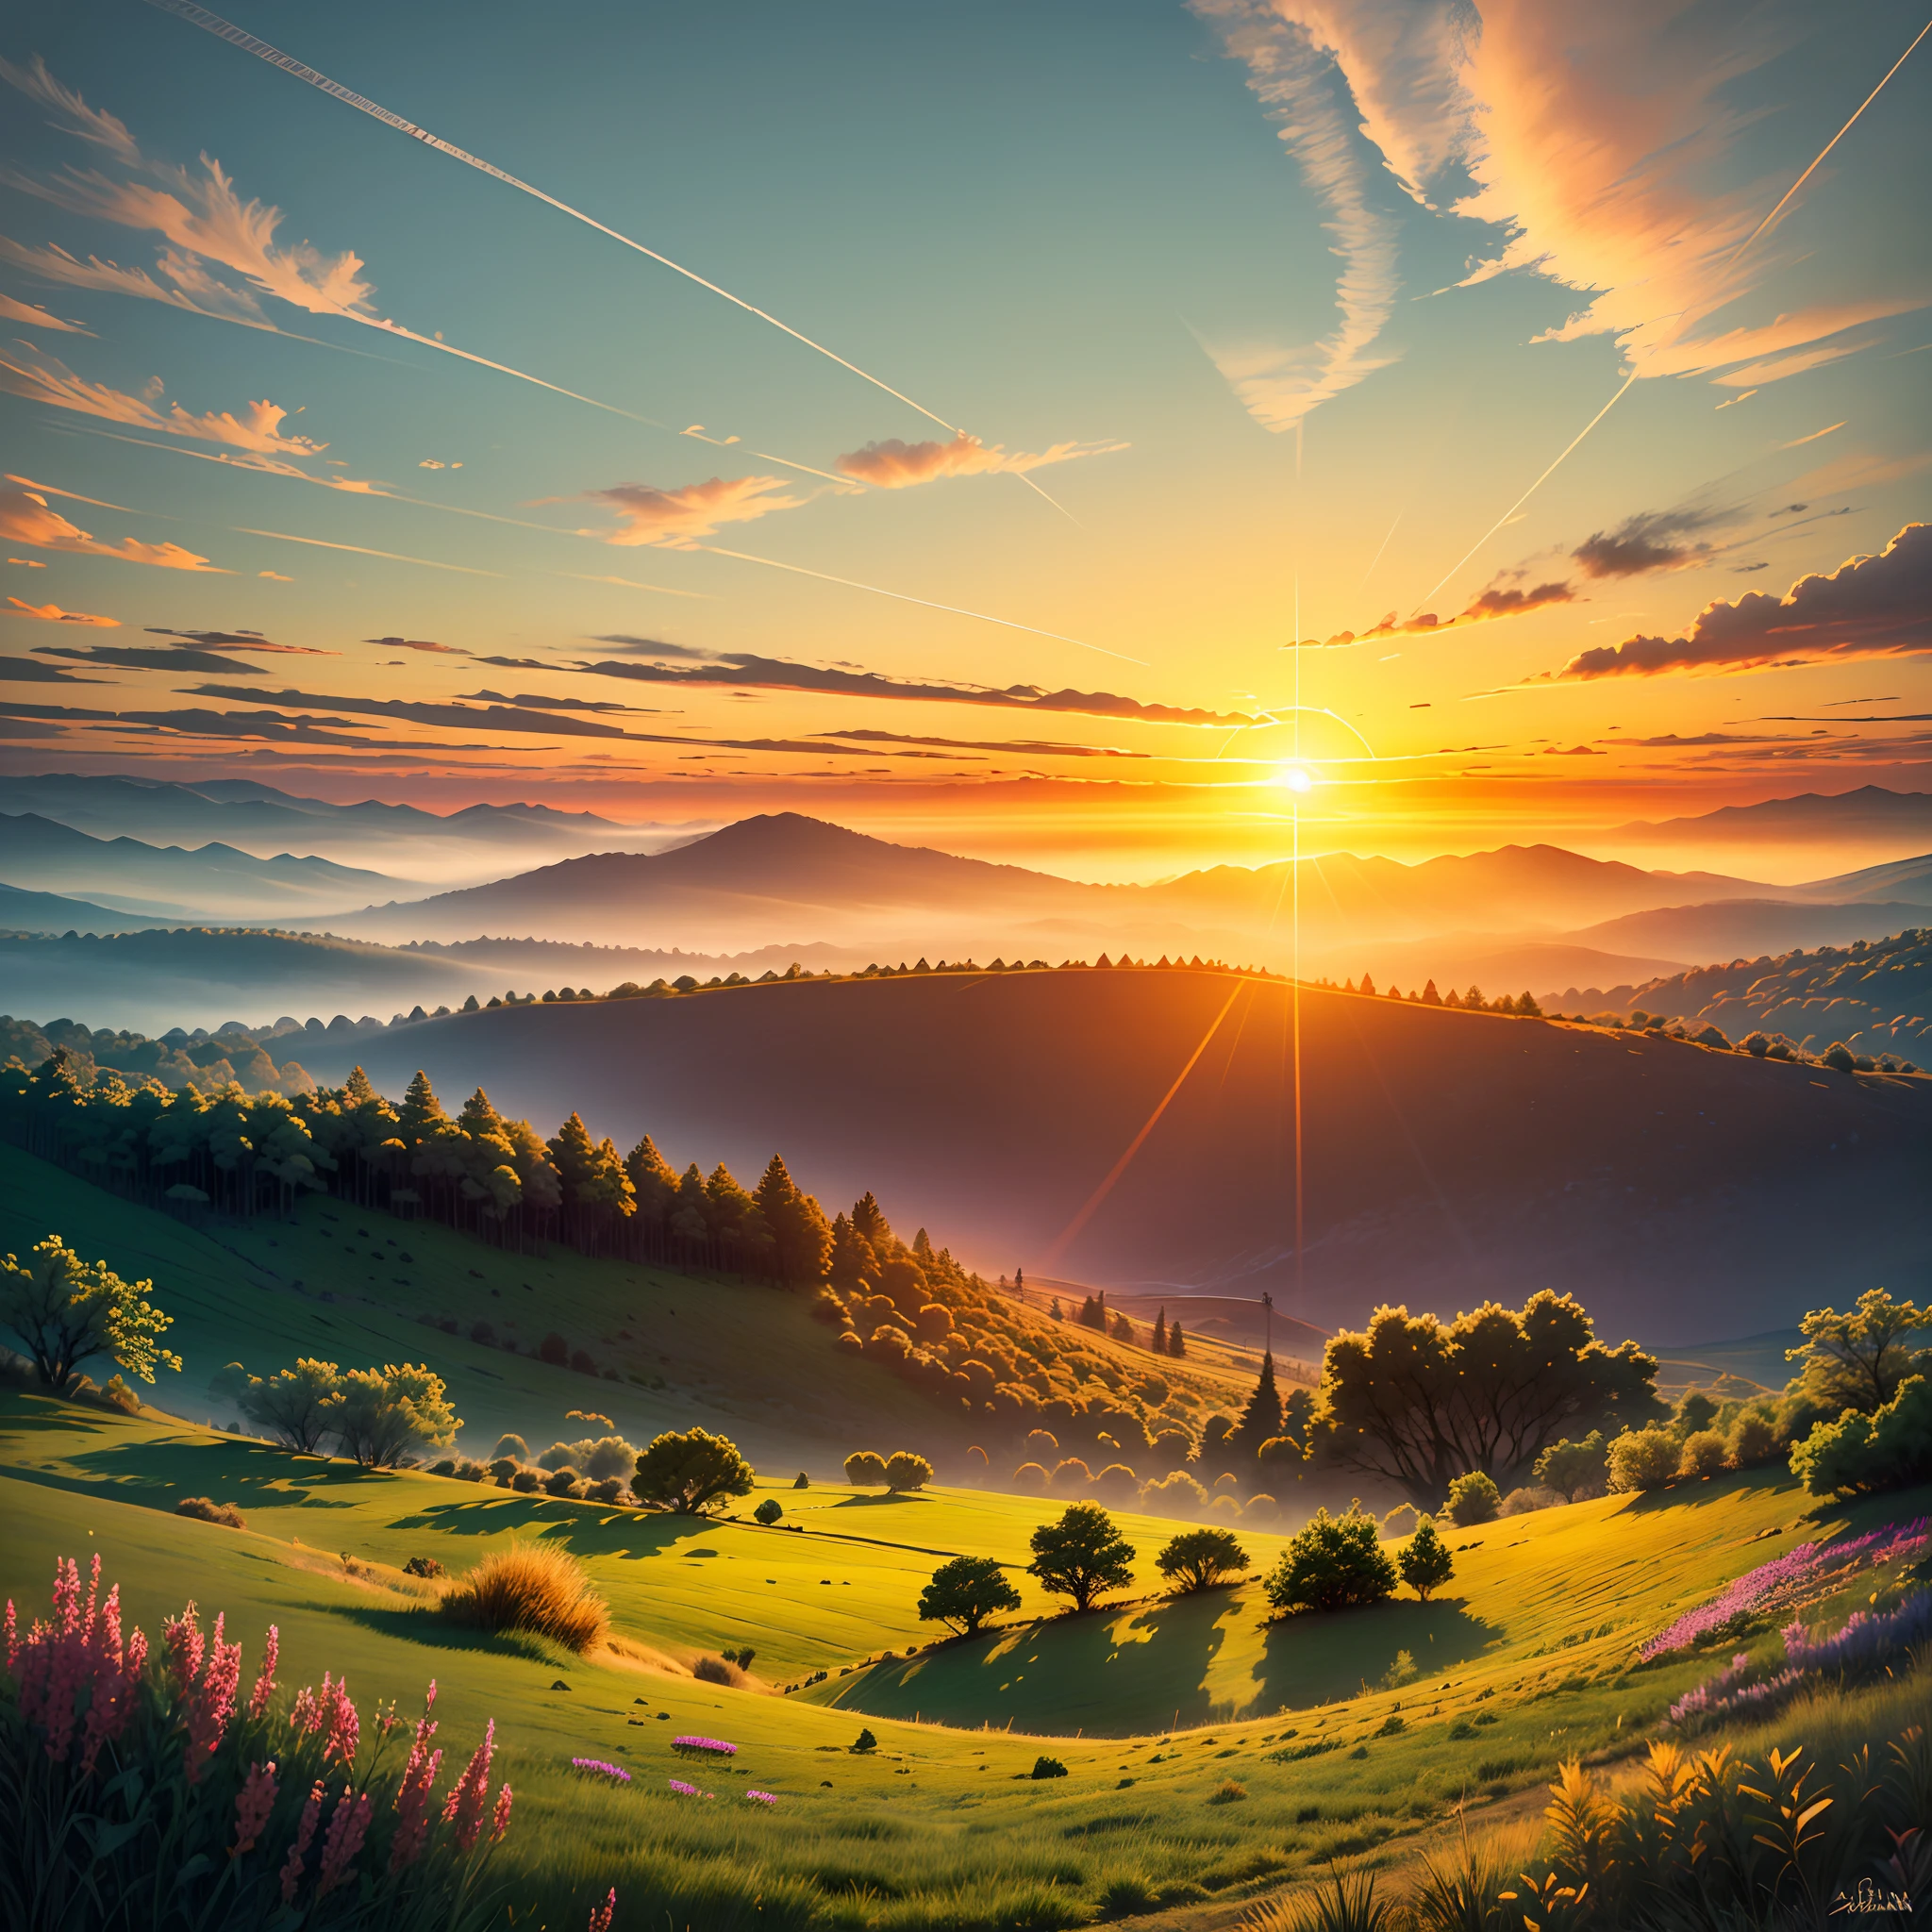 Una imagen que representa un amanecer radiante sobre un paisaje tranquilo y sereno.